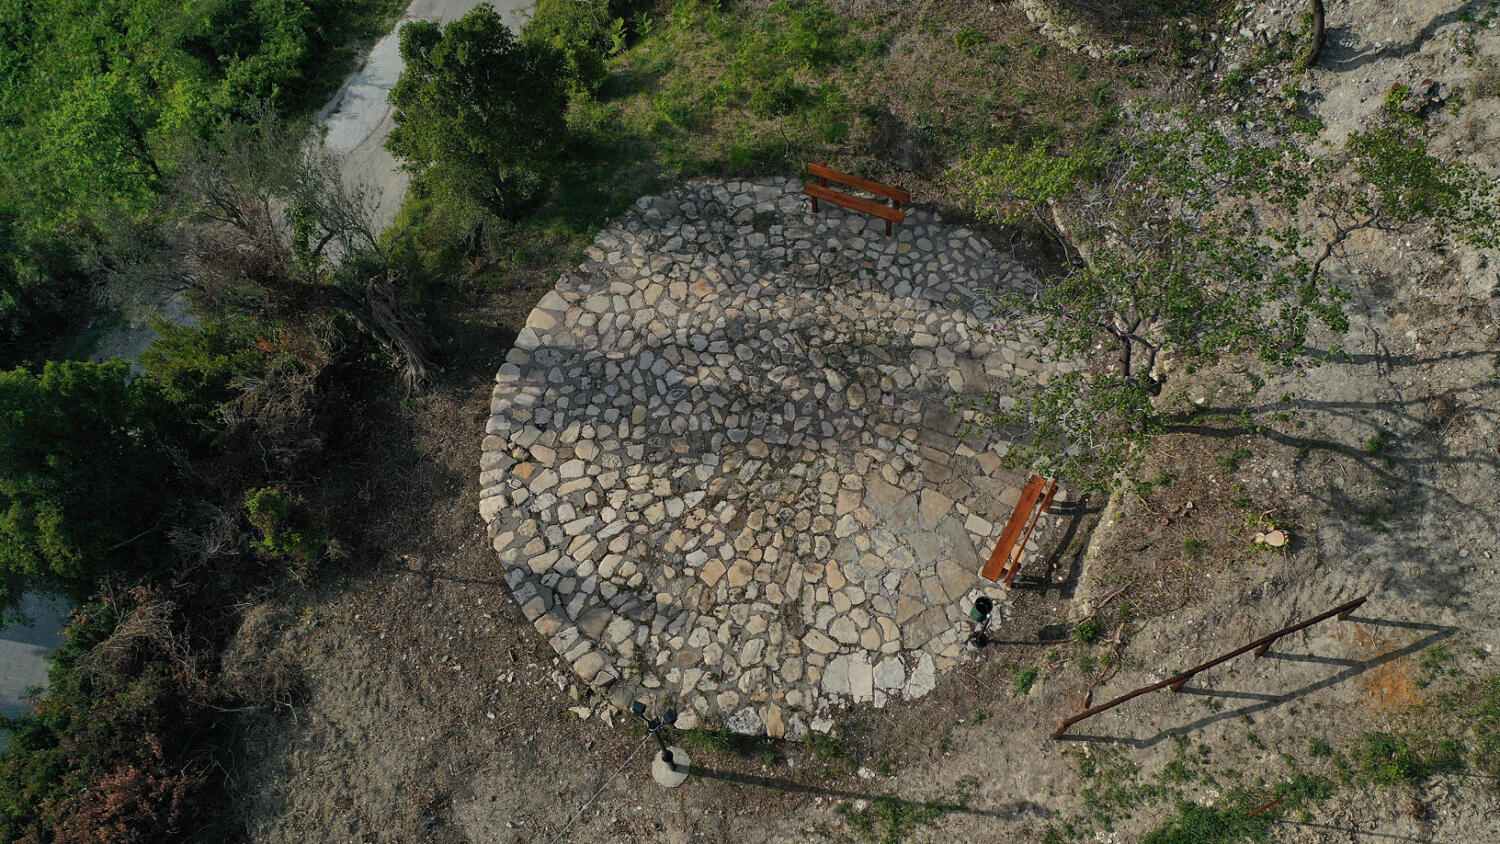 Πέτρινο αλώνι του Γιάννου, χωριό Πύργος. Φωτογραφία: ©Βασίλης Συκάς, για τον Δήμο Κύμης-Αλιβερίου